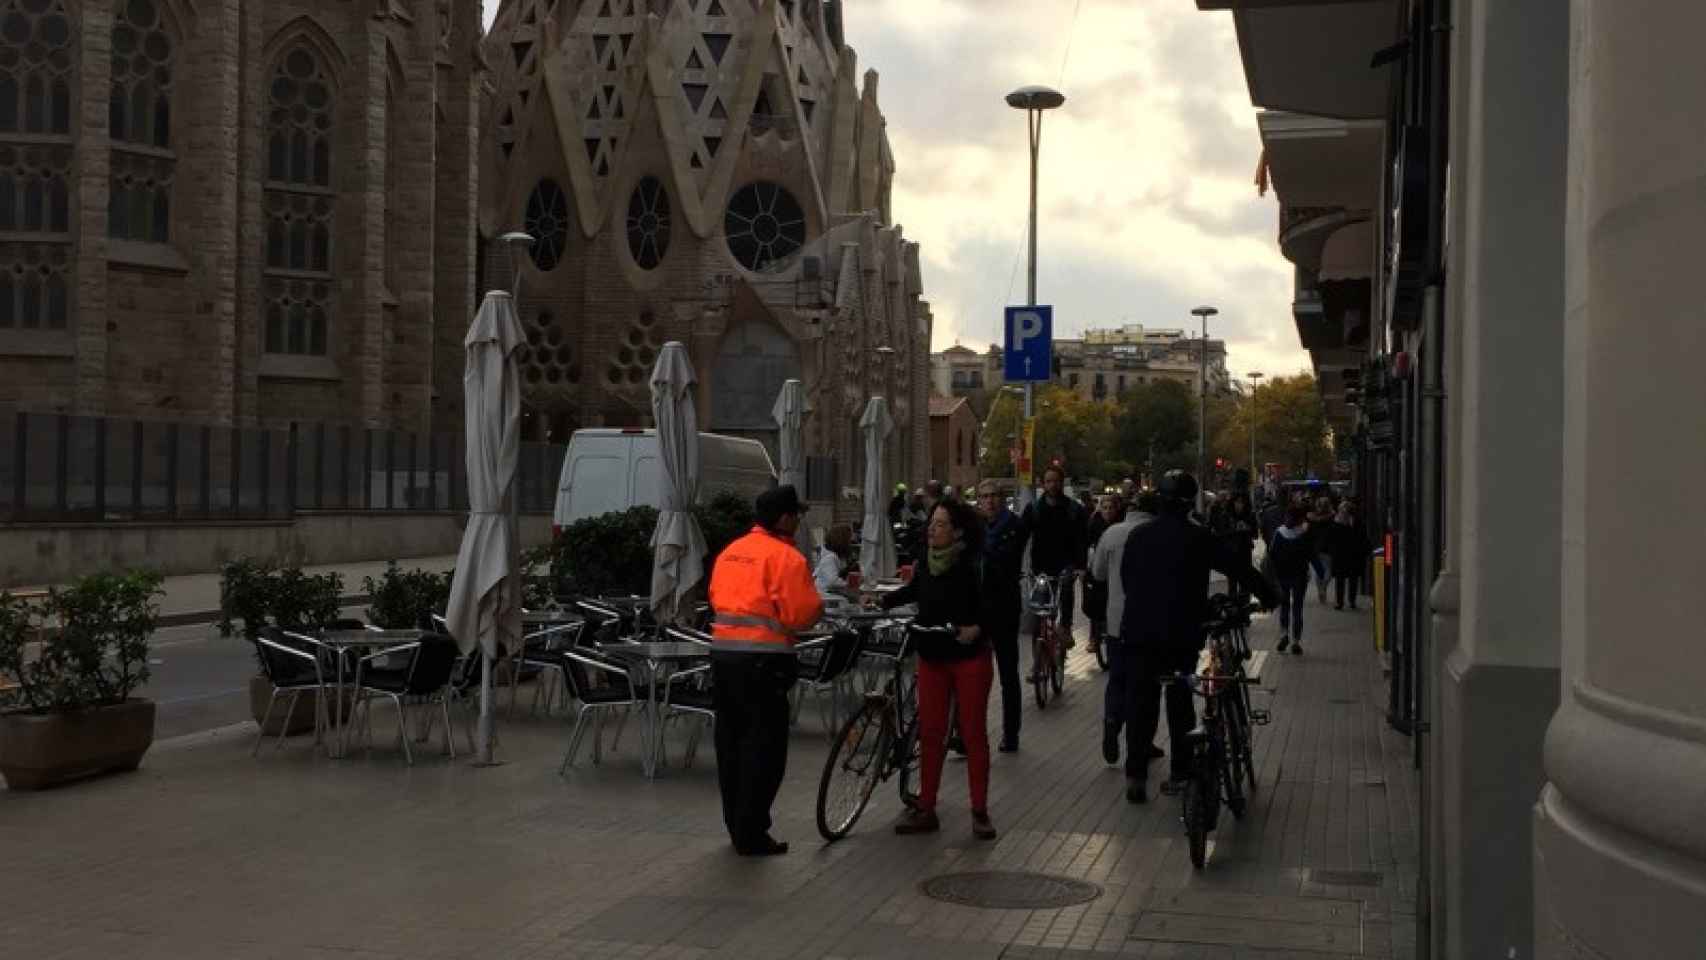 El agente cívico municipal avisa a los ciclistas que deben ir a pie en ese tramo de calle / CG